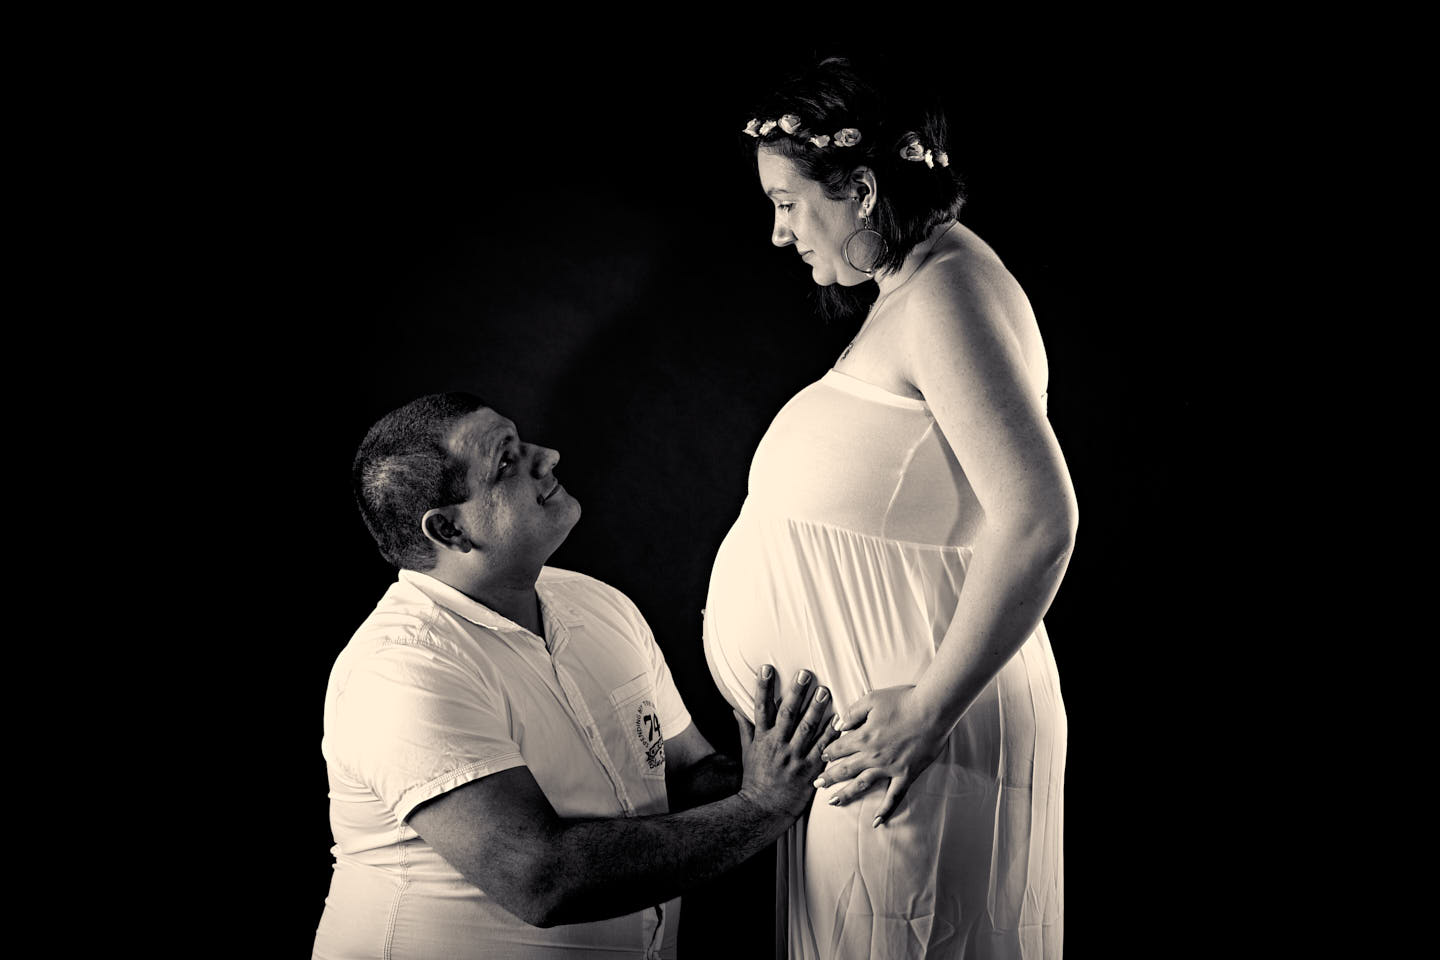 séance photo femme enceinte - séance photo grossesse - sebastien photographie